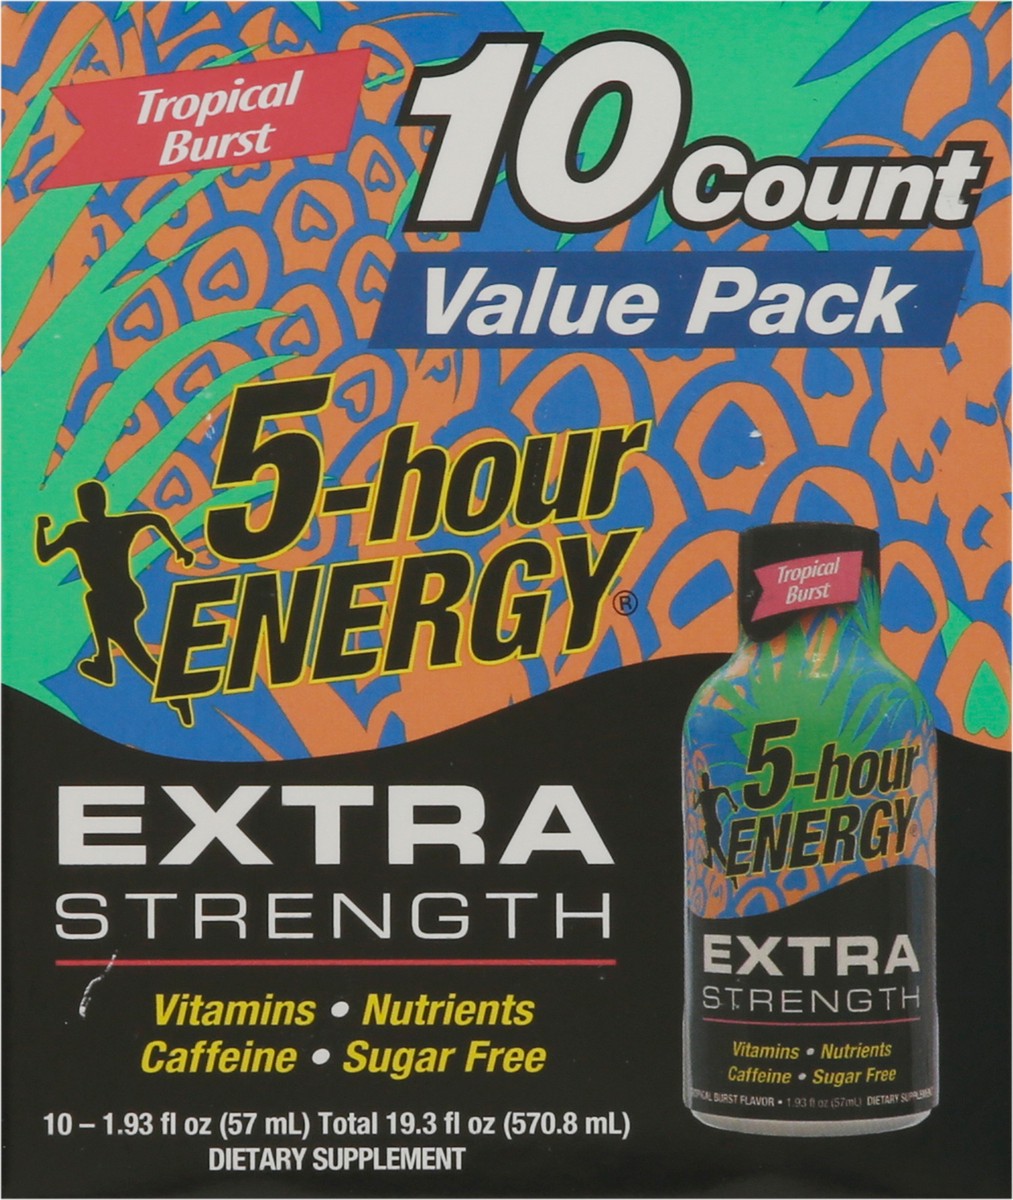 slide 8 of 9, 5-Hour Energy Extra Strength Tropical Burst Energy Drink Value Pack 10 - 1.93 fl oz Bottles, 10 ct